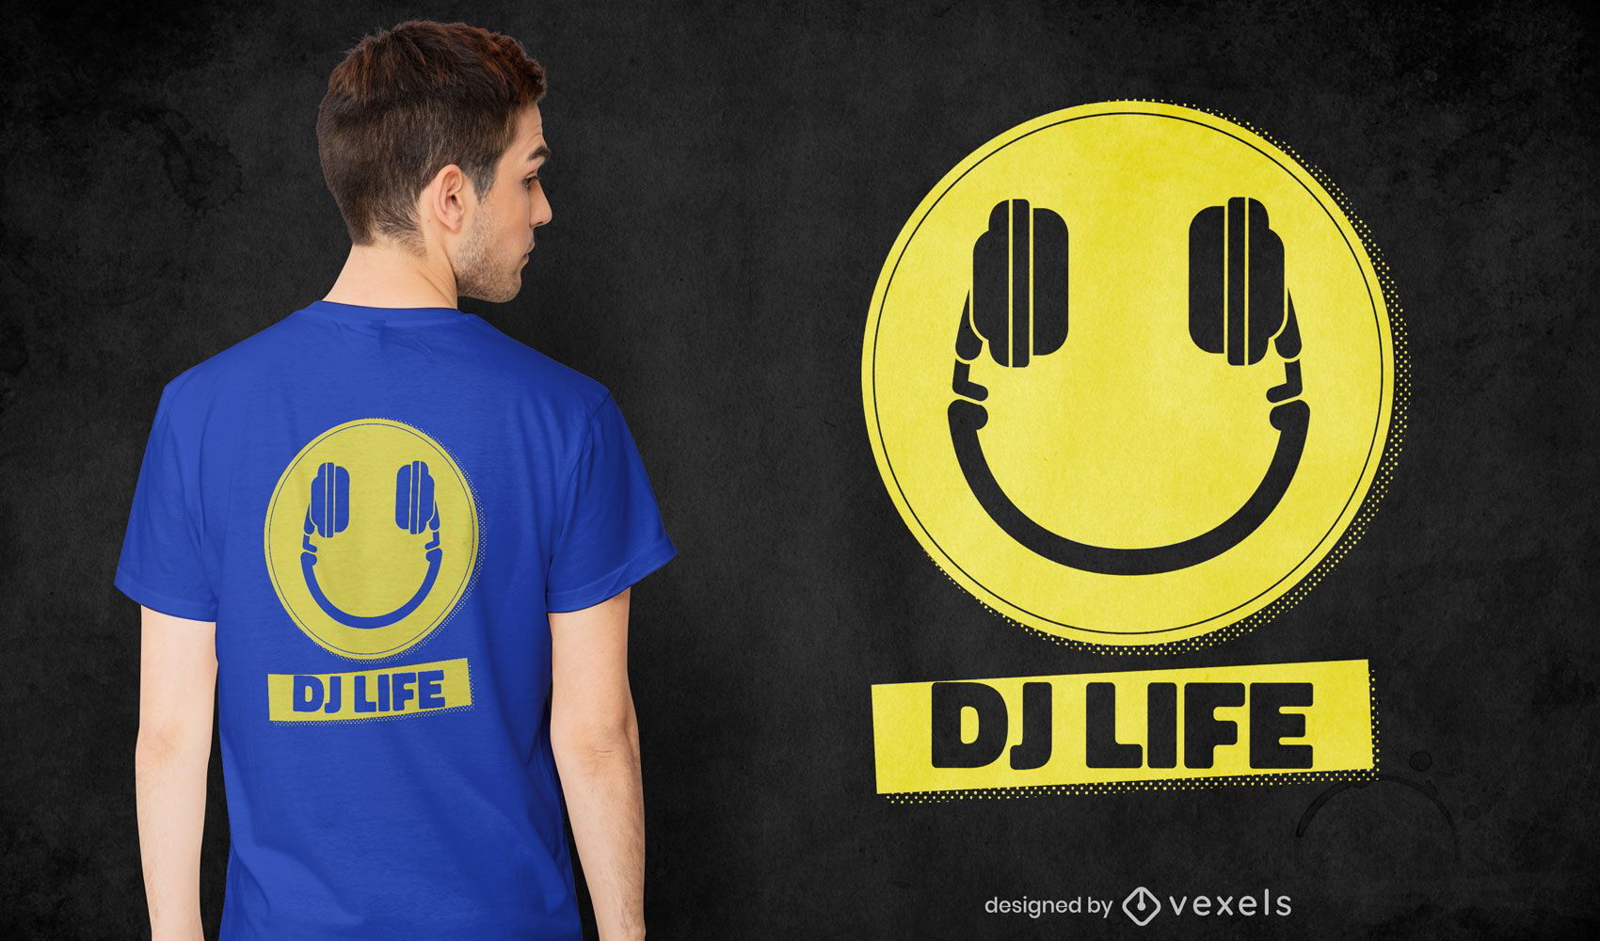 Dj life t-shirt design